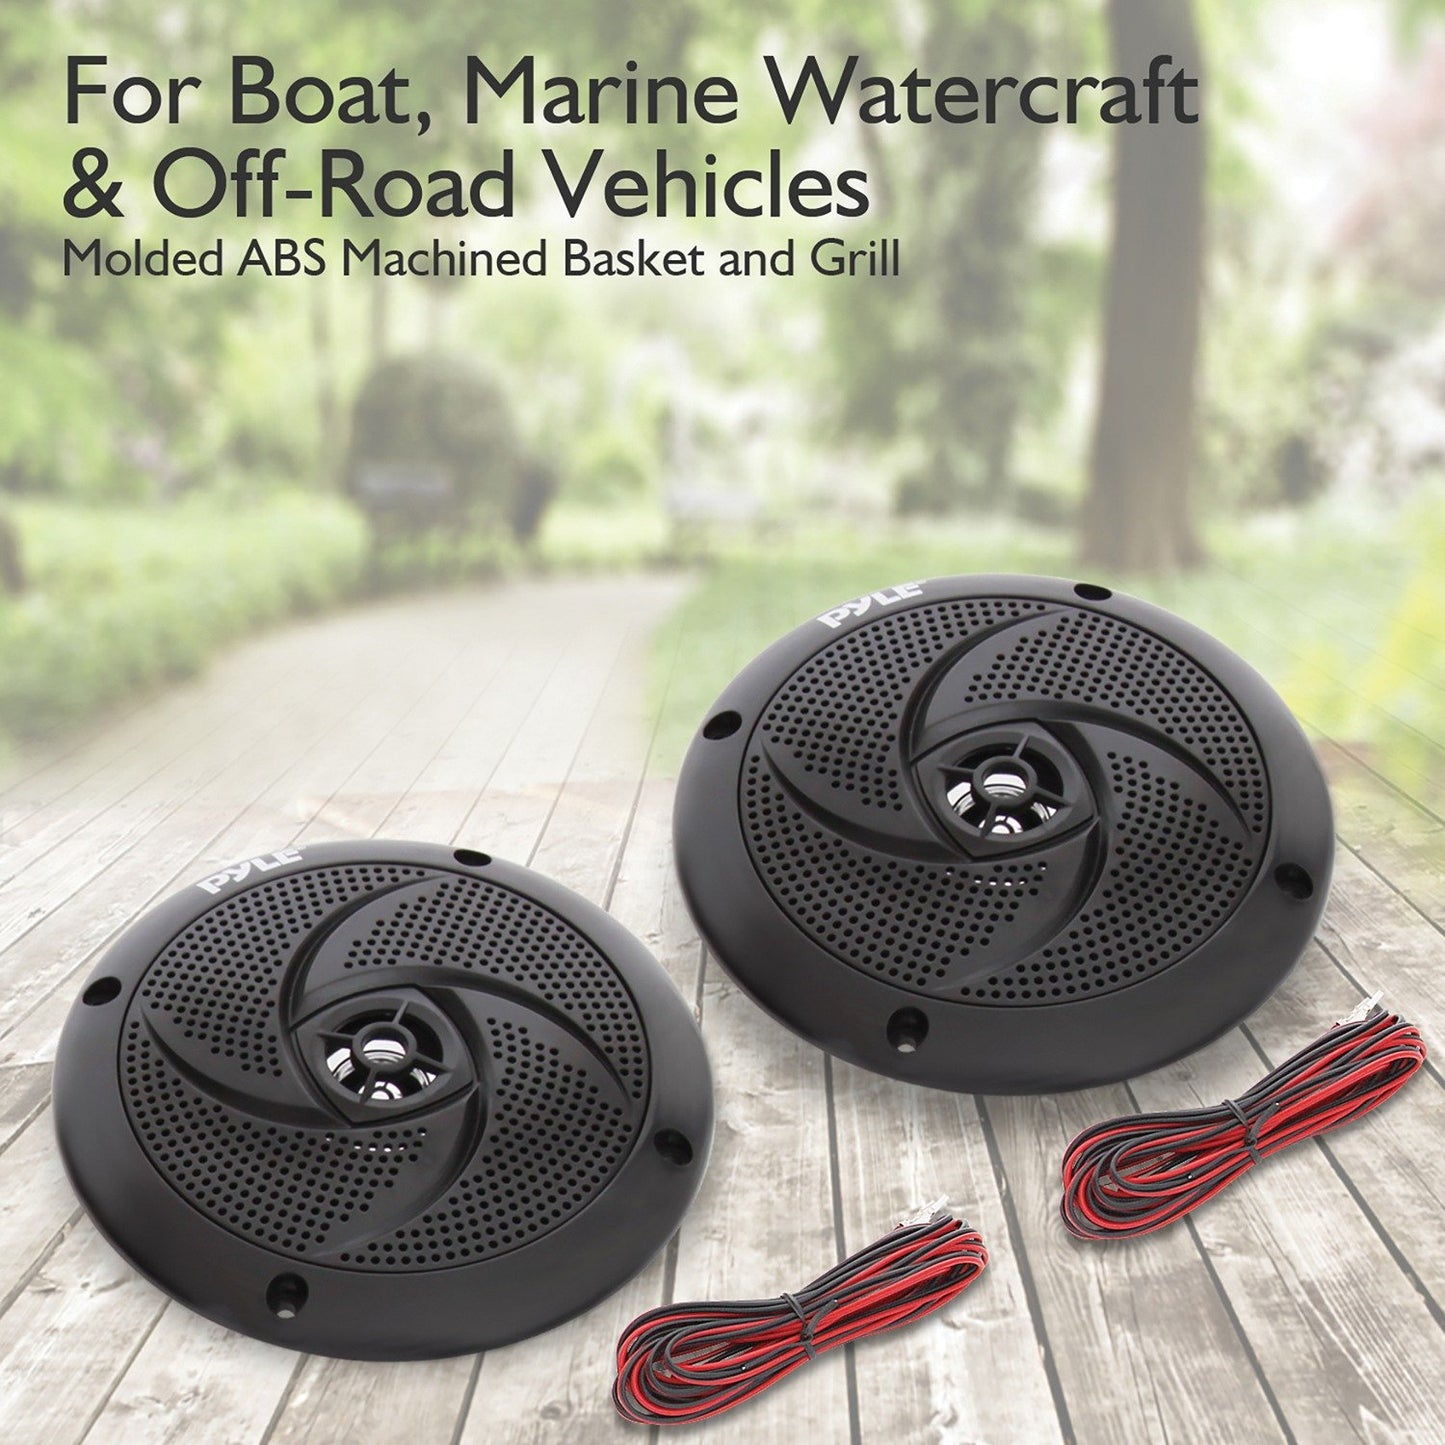 Pyle PLMRS4B 4" 100W Low-Profile Waterproof Marine Speakers